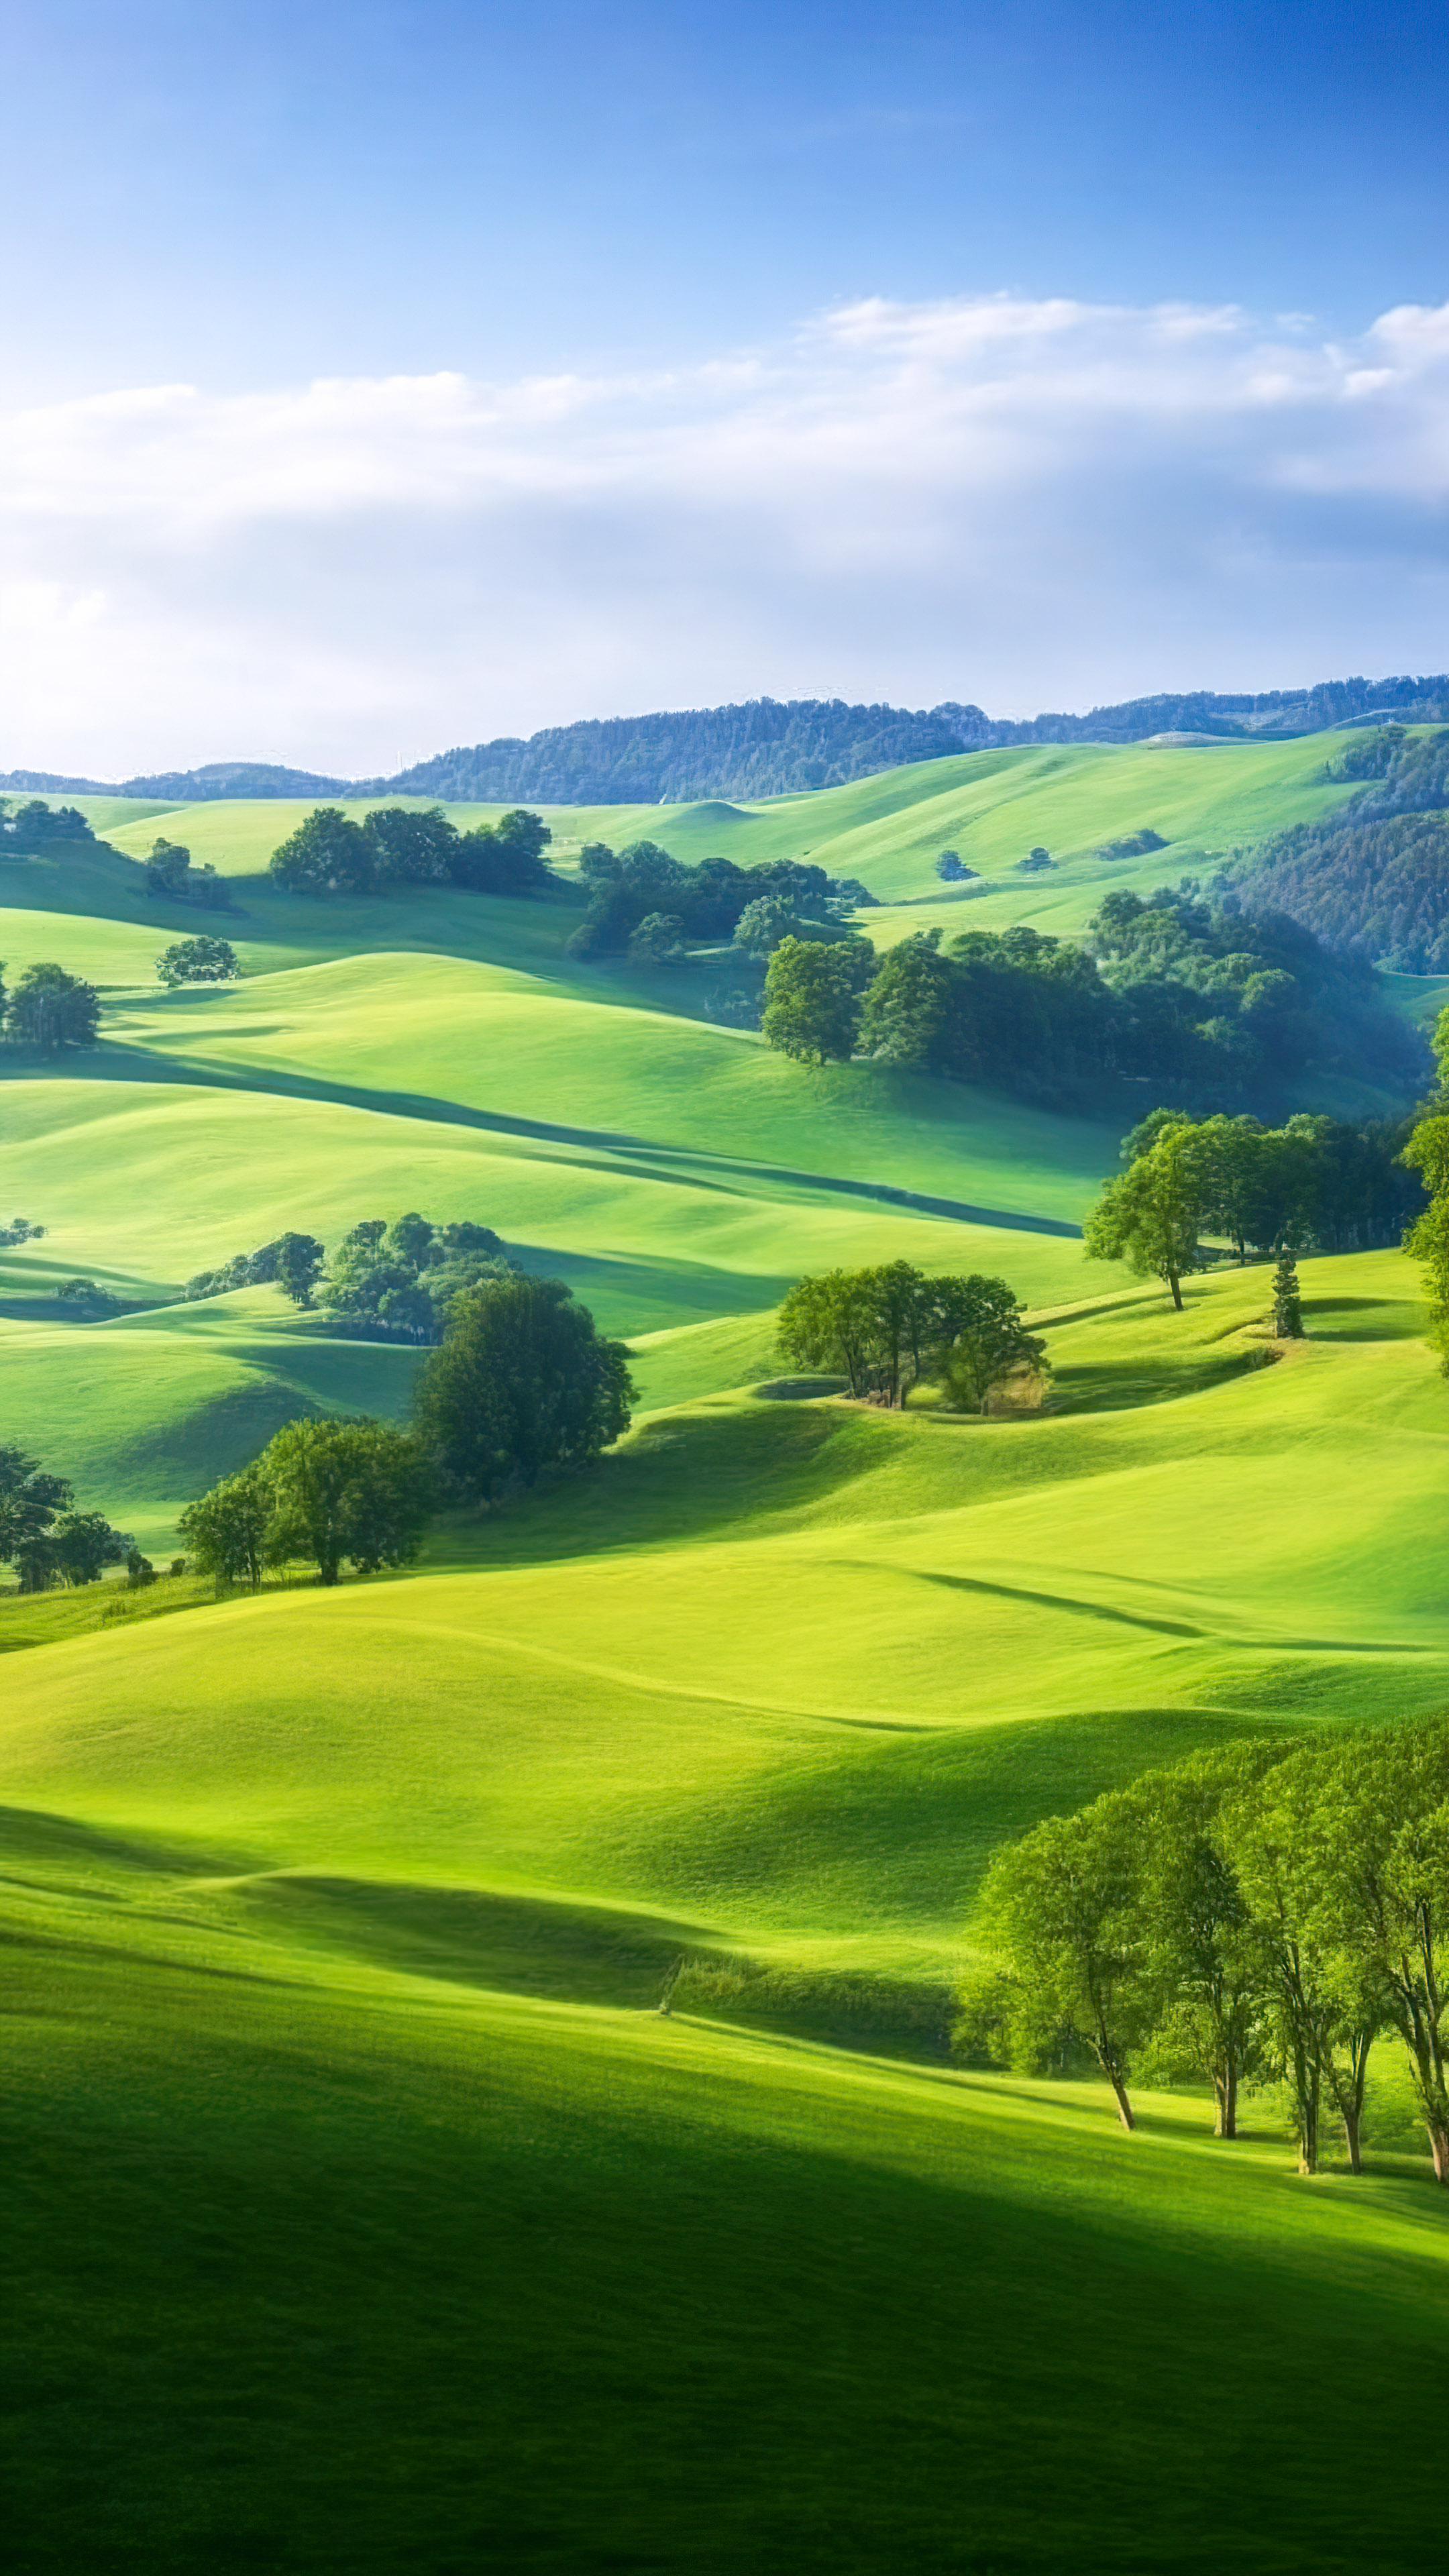 Appréciez la tranquillité de notre fond d'écran de paysage HD, dépeignant une scène paisible de la campagne avec des collines ondulantes, des pâturages verdoyants et un ciel clair de jour.